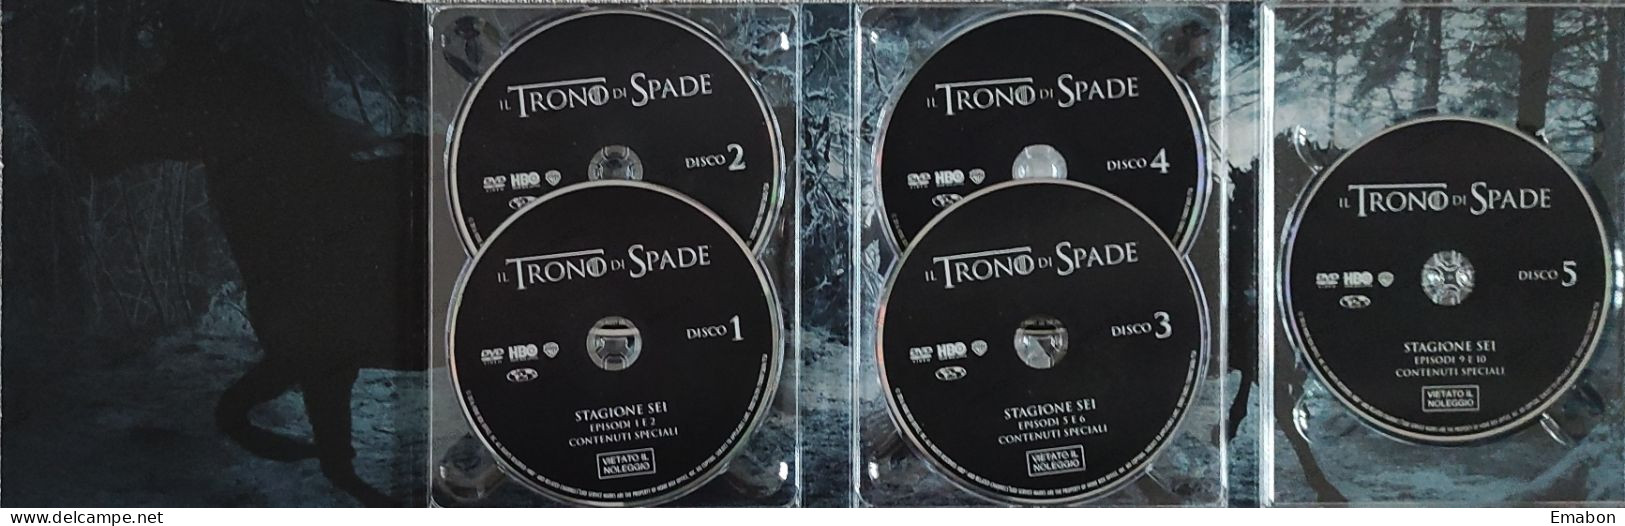 BORGATTA - FANTASTICO - BOX 5 Dvd " IL TRONO DI SPADE SESTA STAGIONE "-  - HBO 2015 -  USATO In Buono Stato - Fantasy